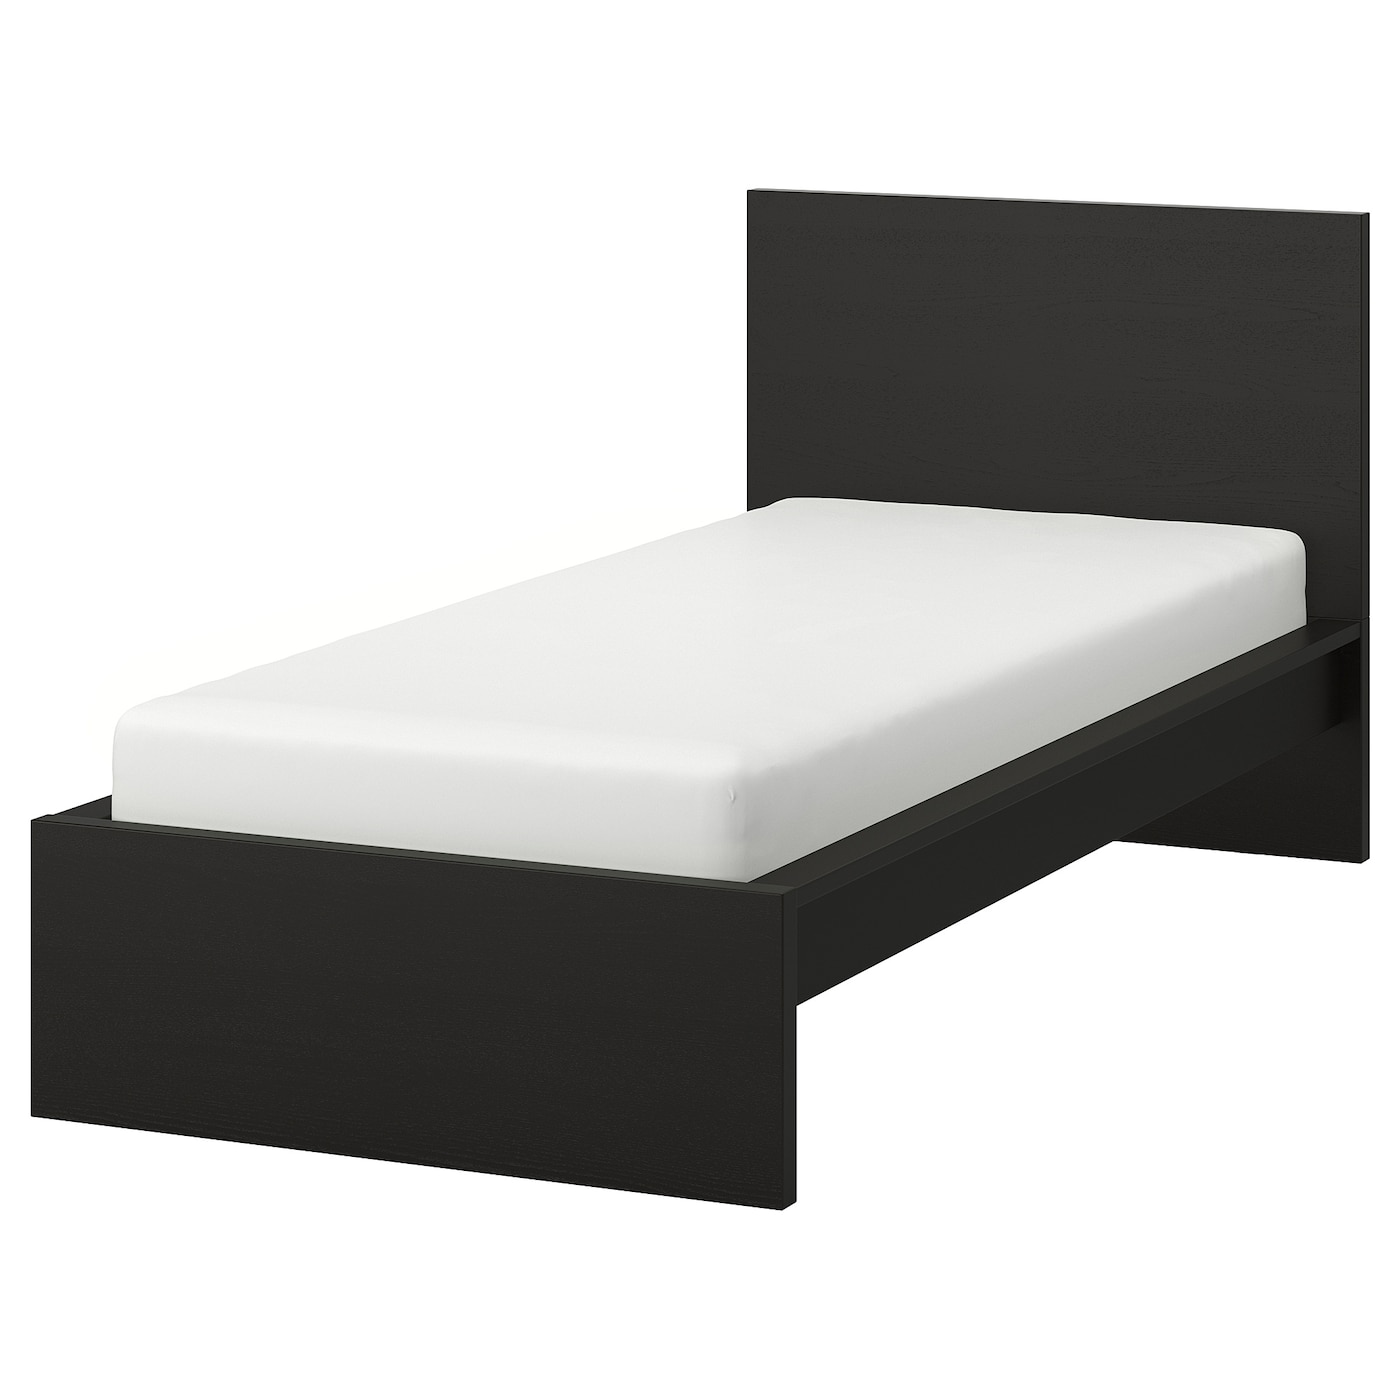 Каркас кровати, высокий - IKEA MALM, 200х90 см, черный, МАЛЬМ ИКЕА